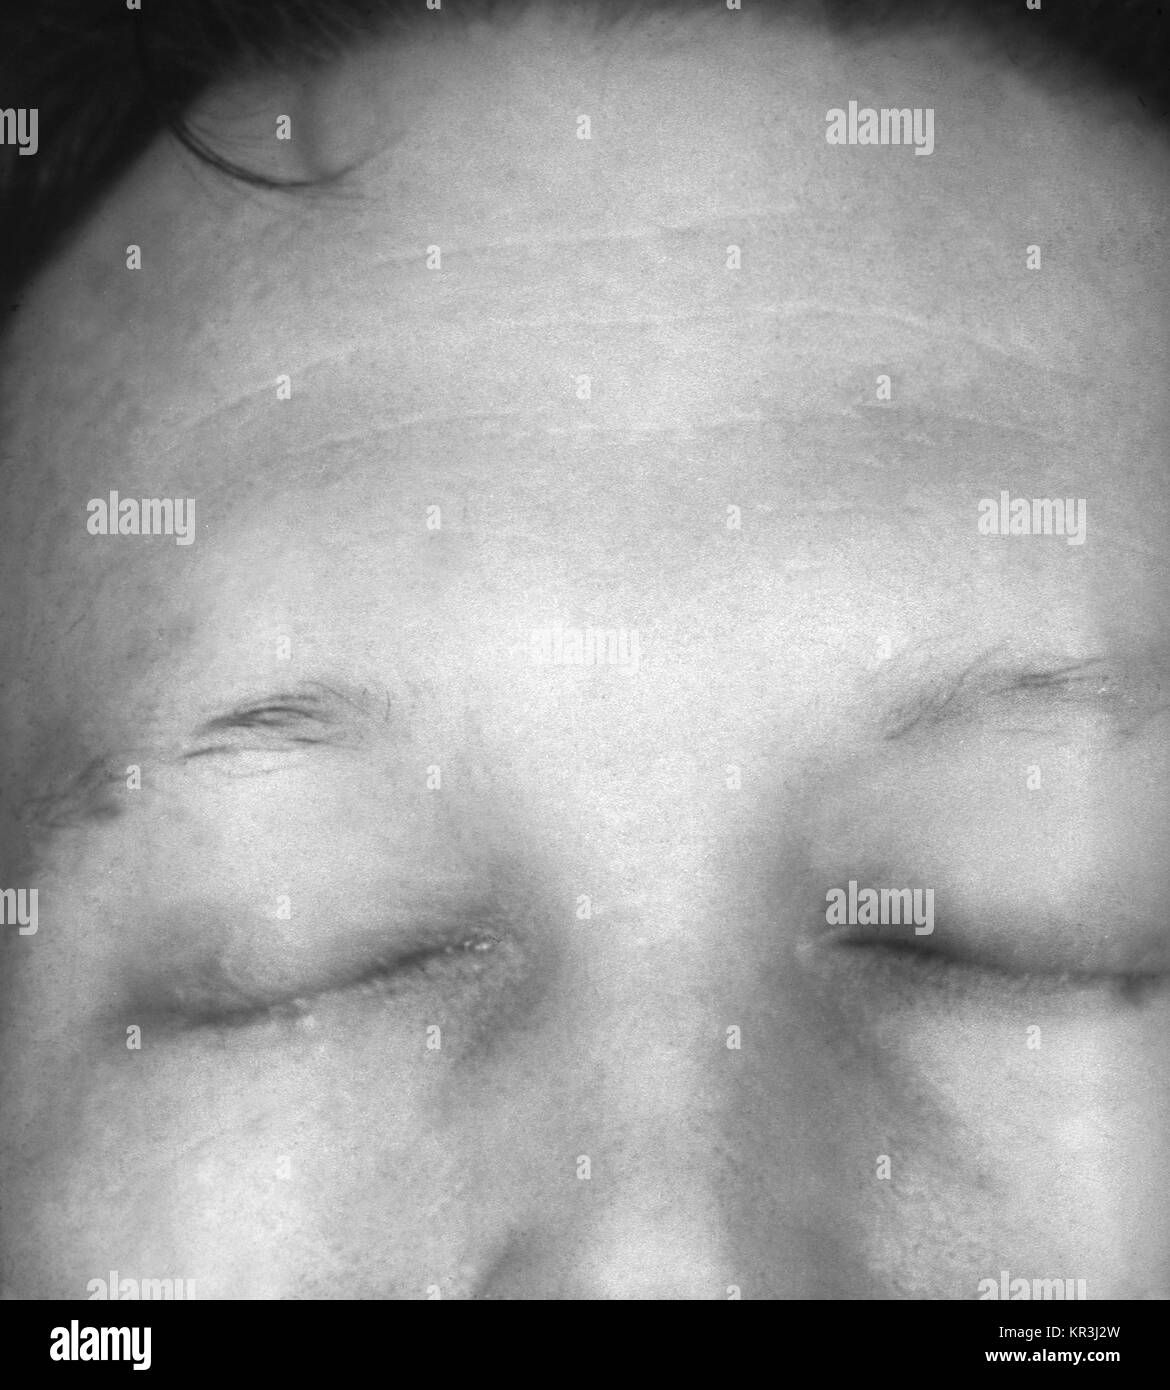 Ein Foto von augenbraue Alopezie oder Haarausfall, durch sekundäre Syphilis verursacht. Dieser Patient entwickelte eine Augenbraue Alopezie während der zweiten Phase der Syphilis, 1971. Andere Symptome, die während dieser Phase auftreten können sind leichtes Fieber, Müdigkeit, Kopfschmerzen, Halsschmerzen und geschwollene Lymphdrüsen. Mit freundlicher CDC/Susan Lindsley. Stockfoto